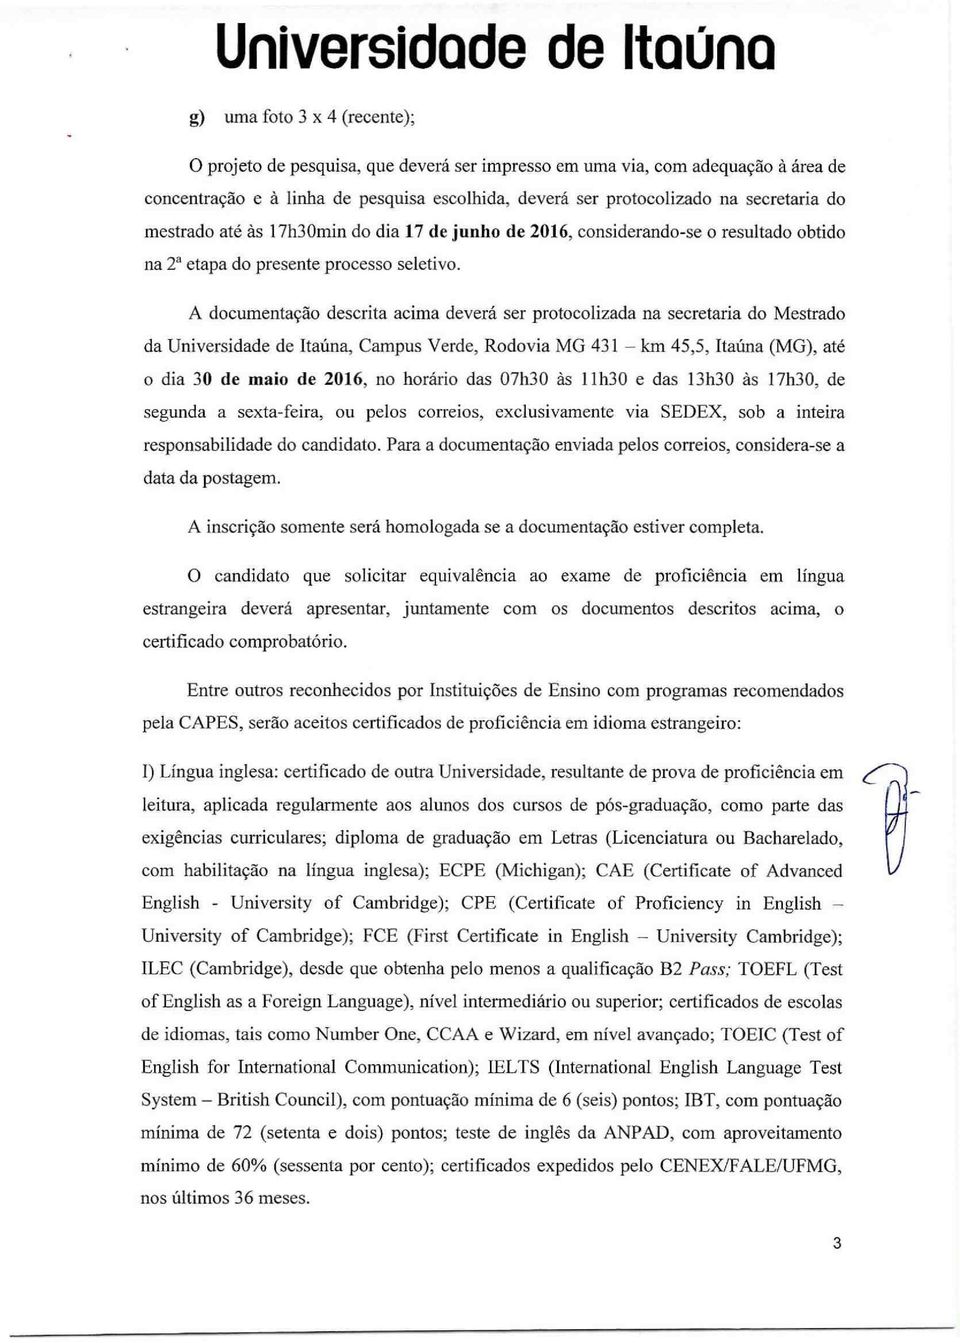 A documentação descrita acima deverá ser protocolizada na secretaria do Mestrado da Universidade de Itaúna, Campus Verde, Rodovia MG 431 km 45,5, Itaúna (MG), até o dia 30 de maio de 2016, no horário